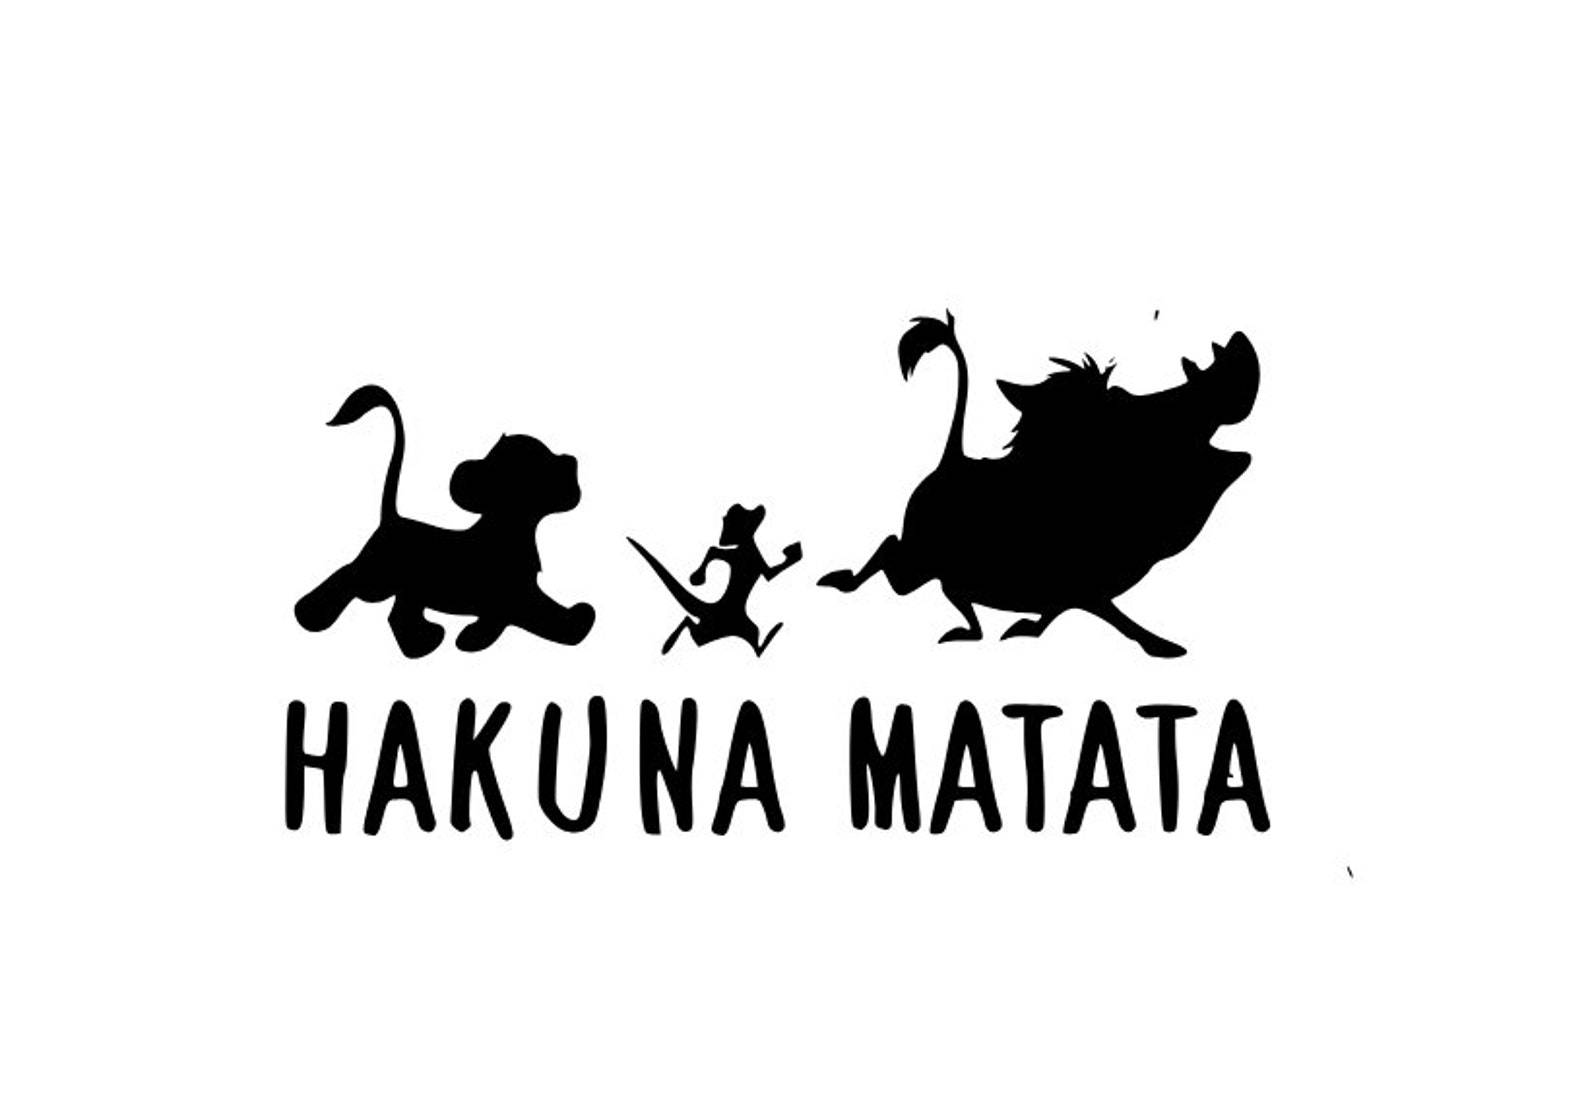 Африканская вечеринка для взрослых: полная хакуна матата!